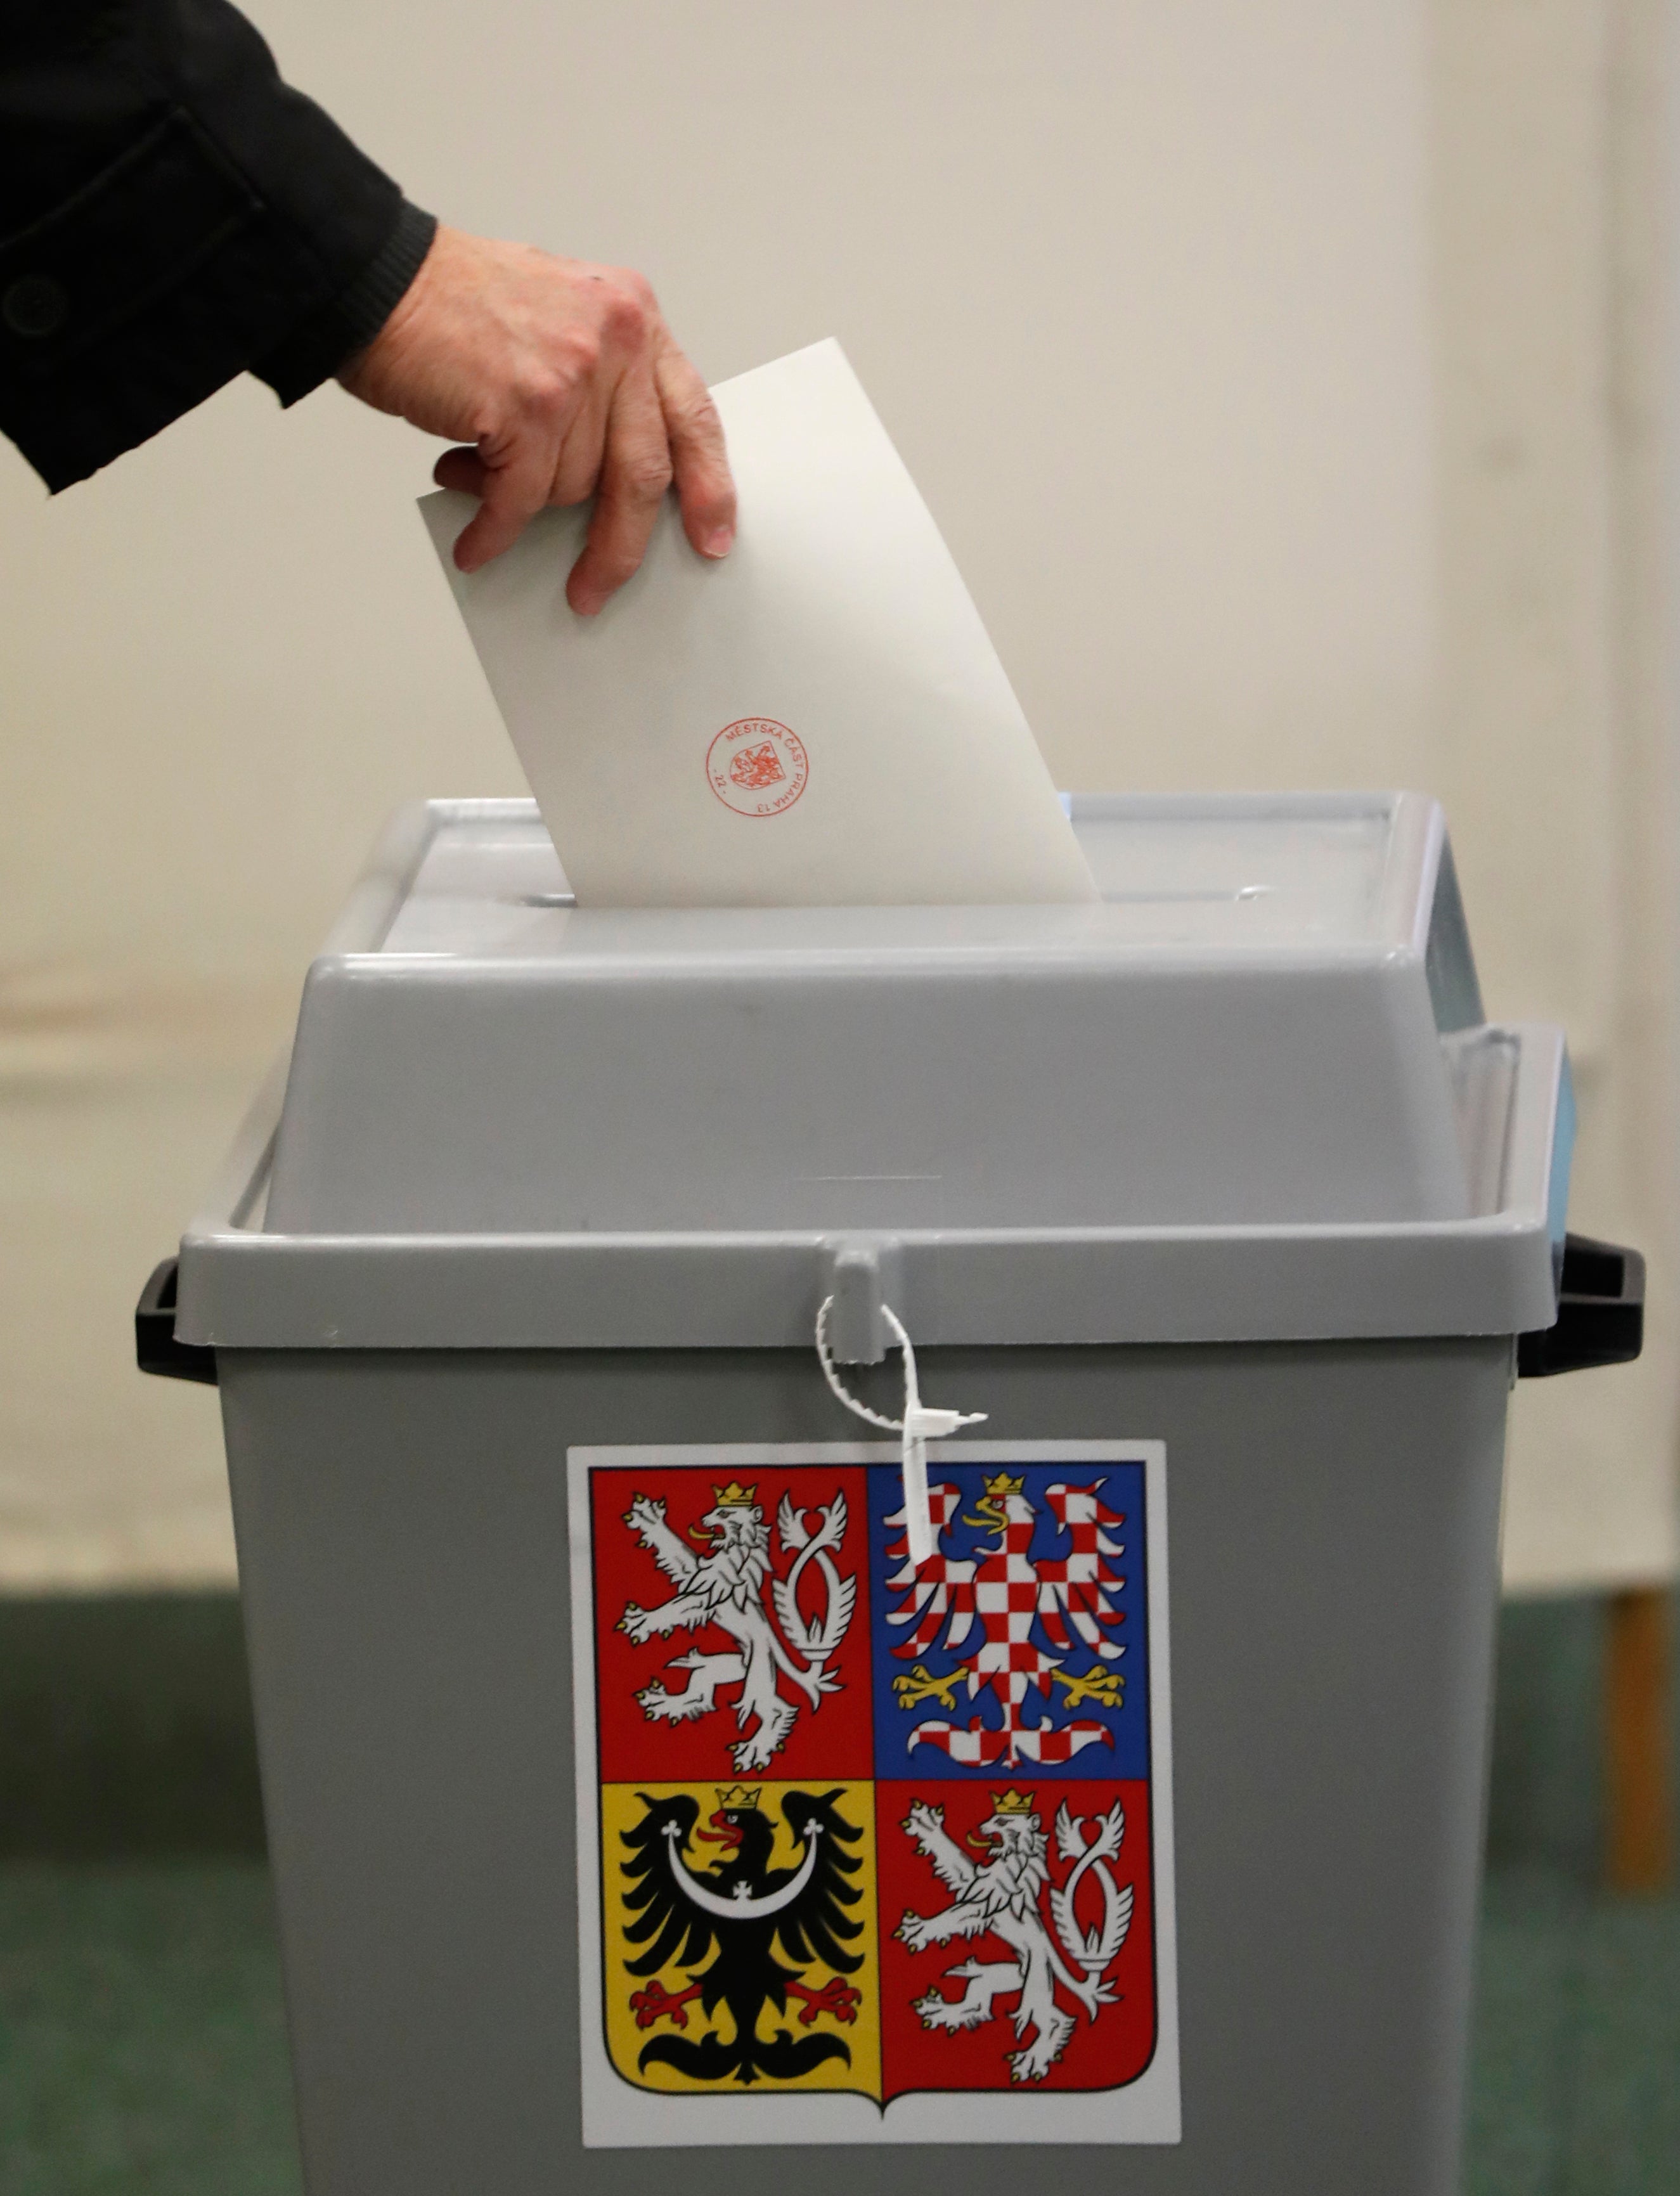 Czech Republic Elections Law